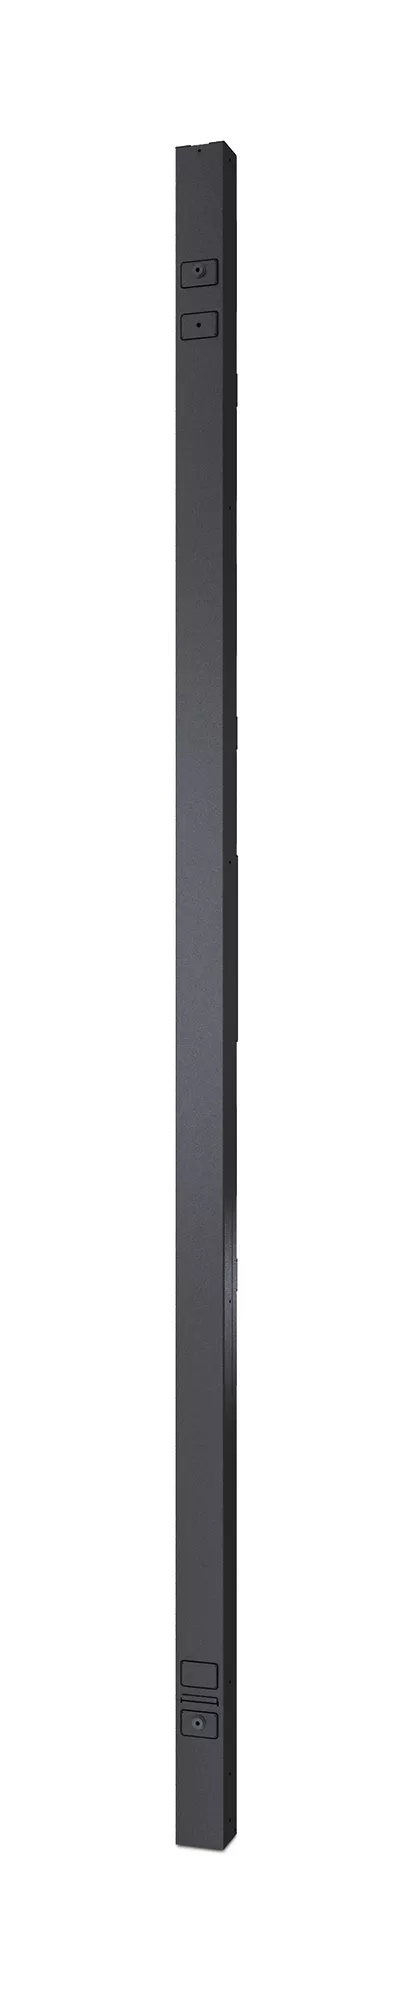 Vente APC Rack PDU 2G Metered-by-Outlet ZeroU 16A 100-240V APC au meilleur prix - visuel 2